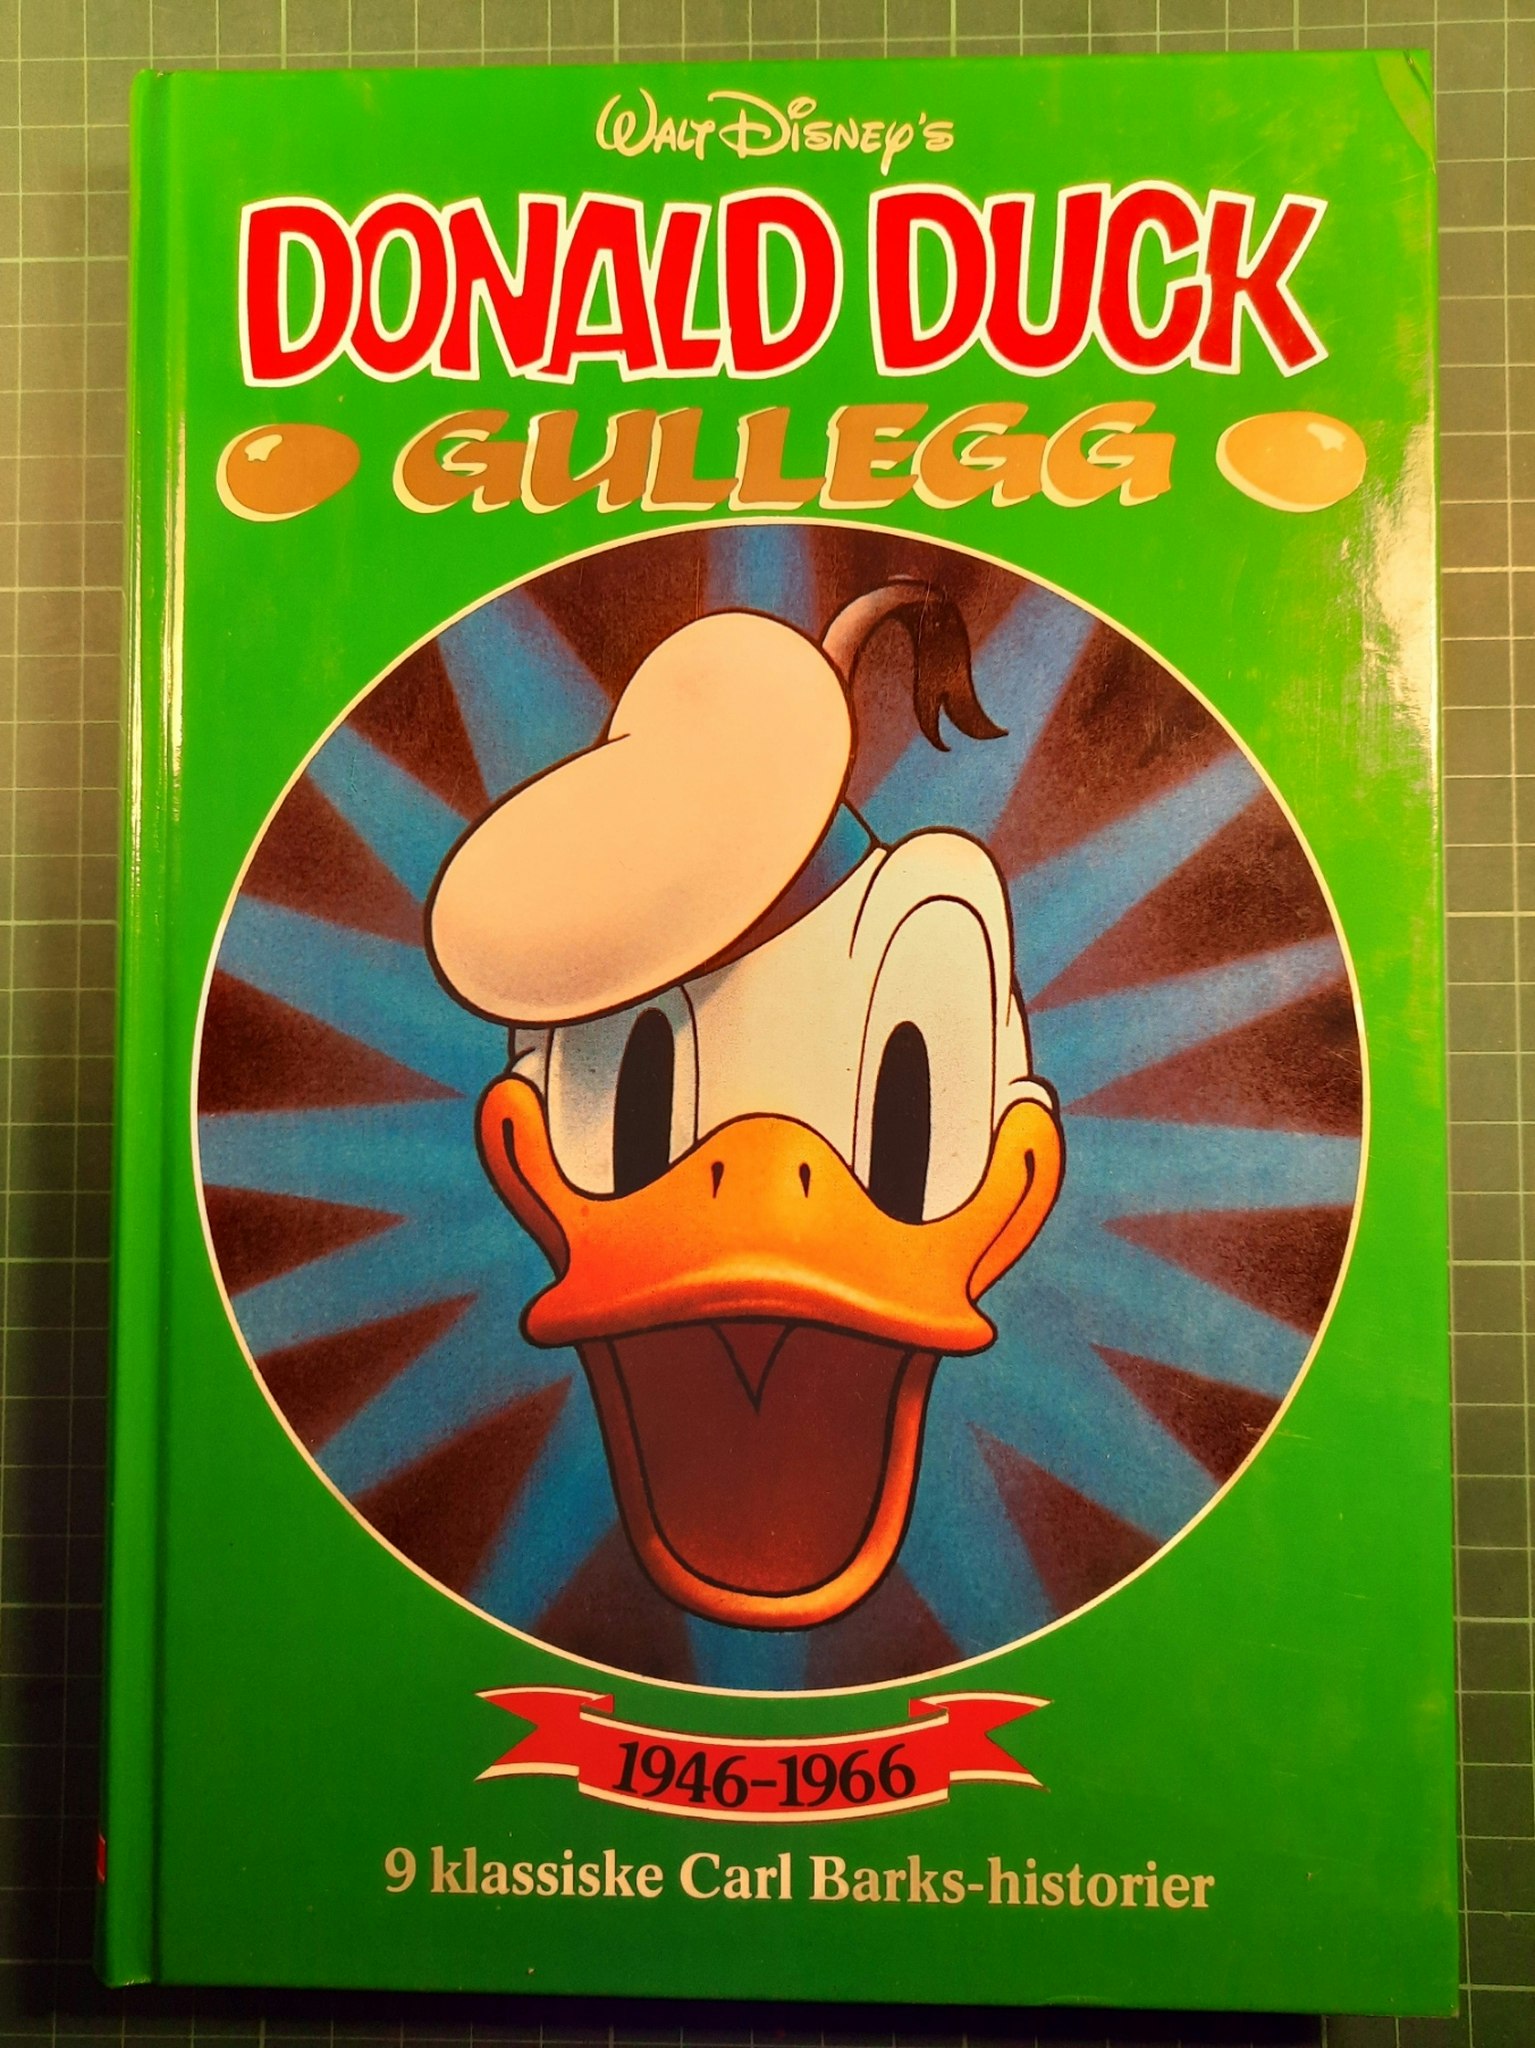 Donald Duck gullegg